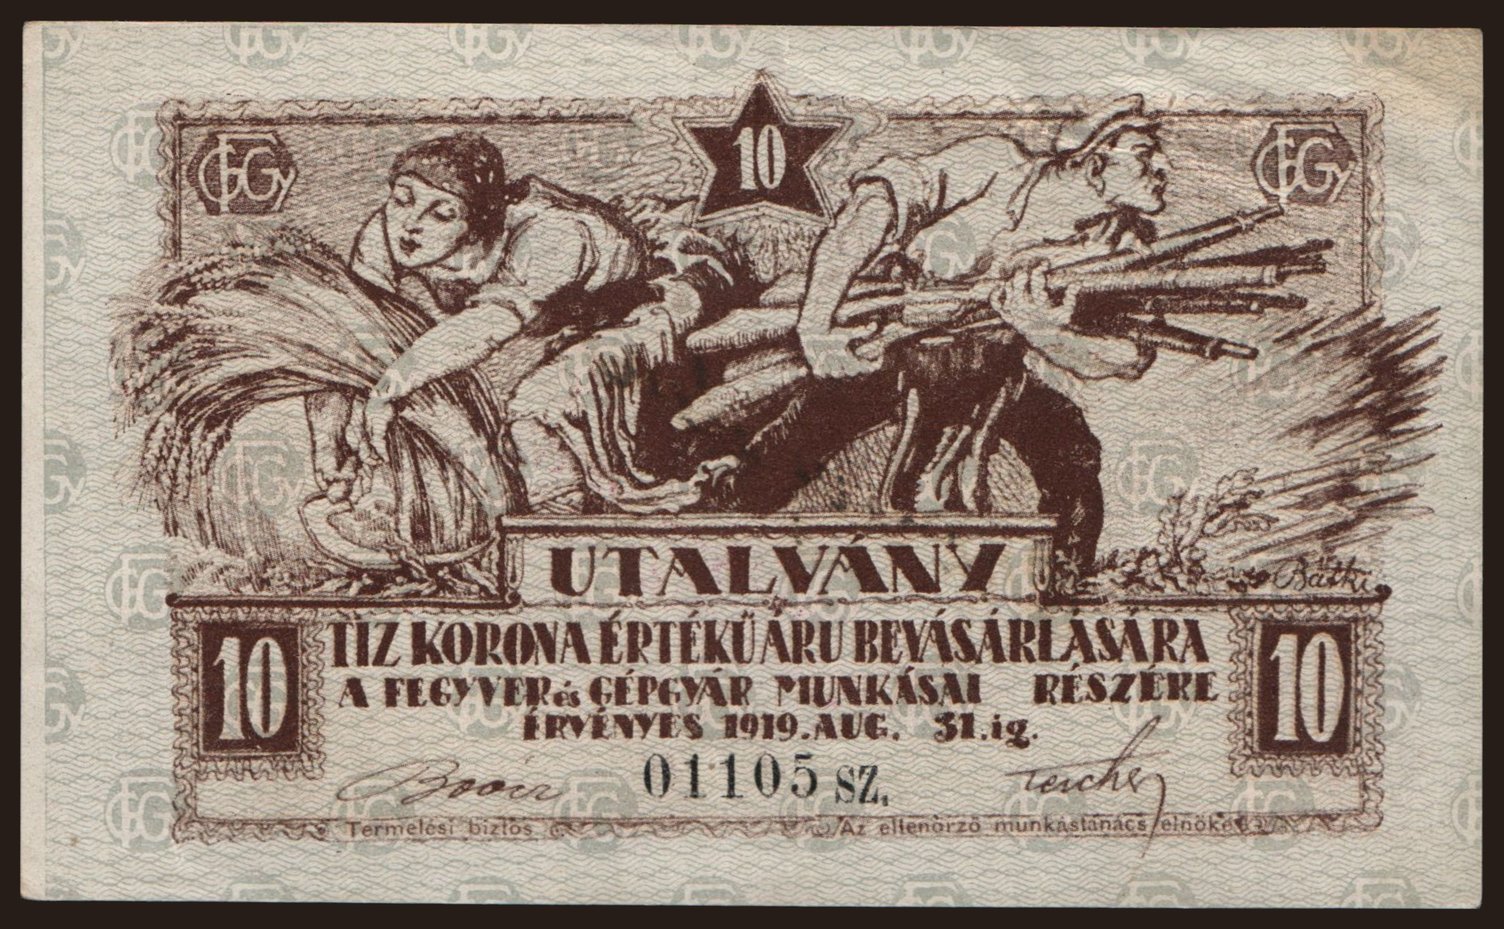 Budapest/ Fegyver és Gépgyár, 10 korona, 1919